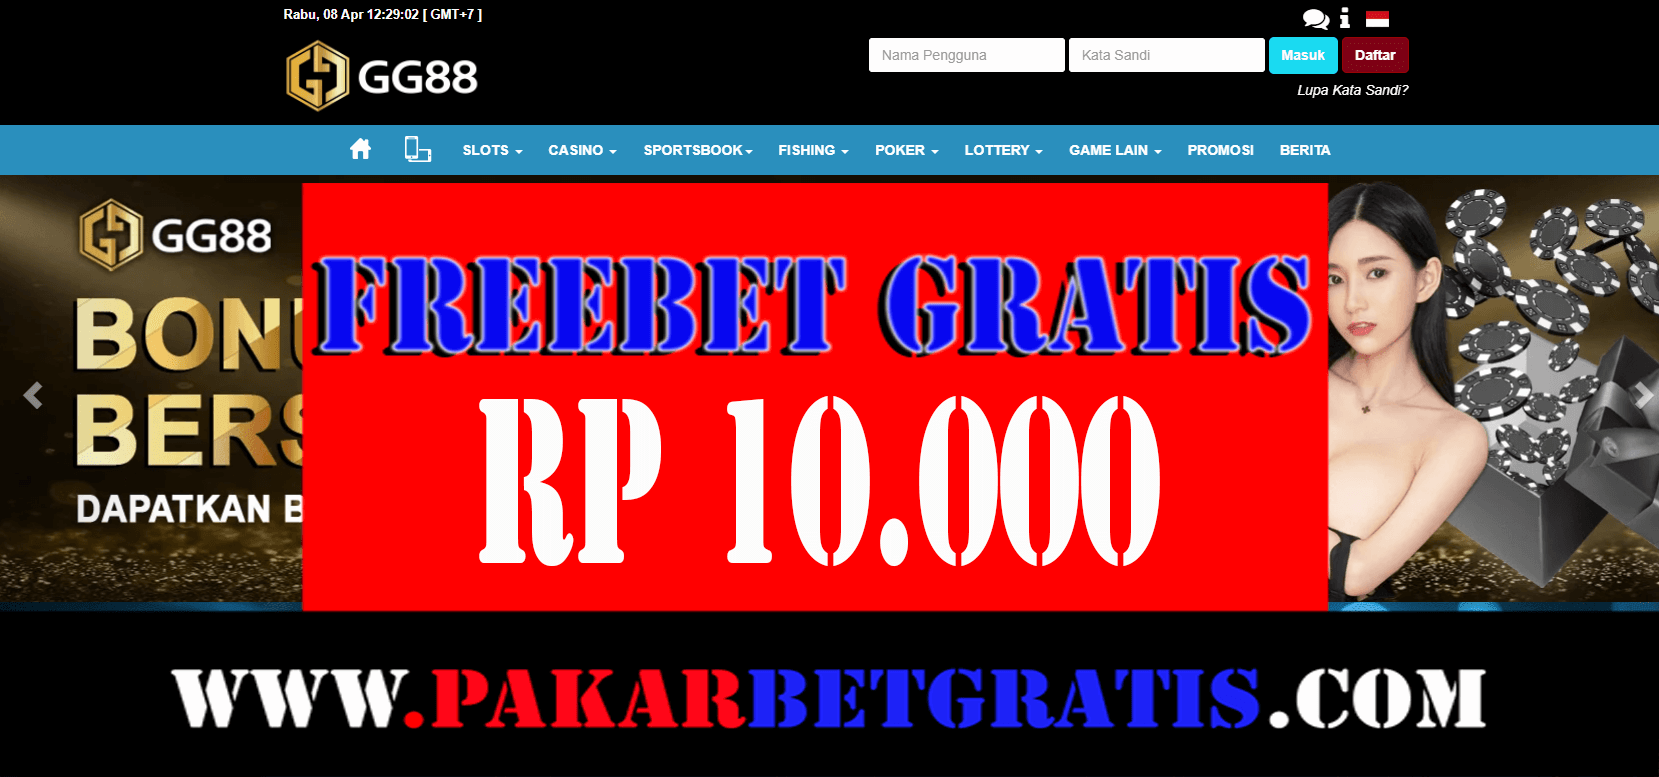 Freebet Gratis GG88 Rp 10.000 Tanpa Deposit